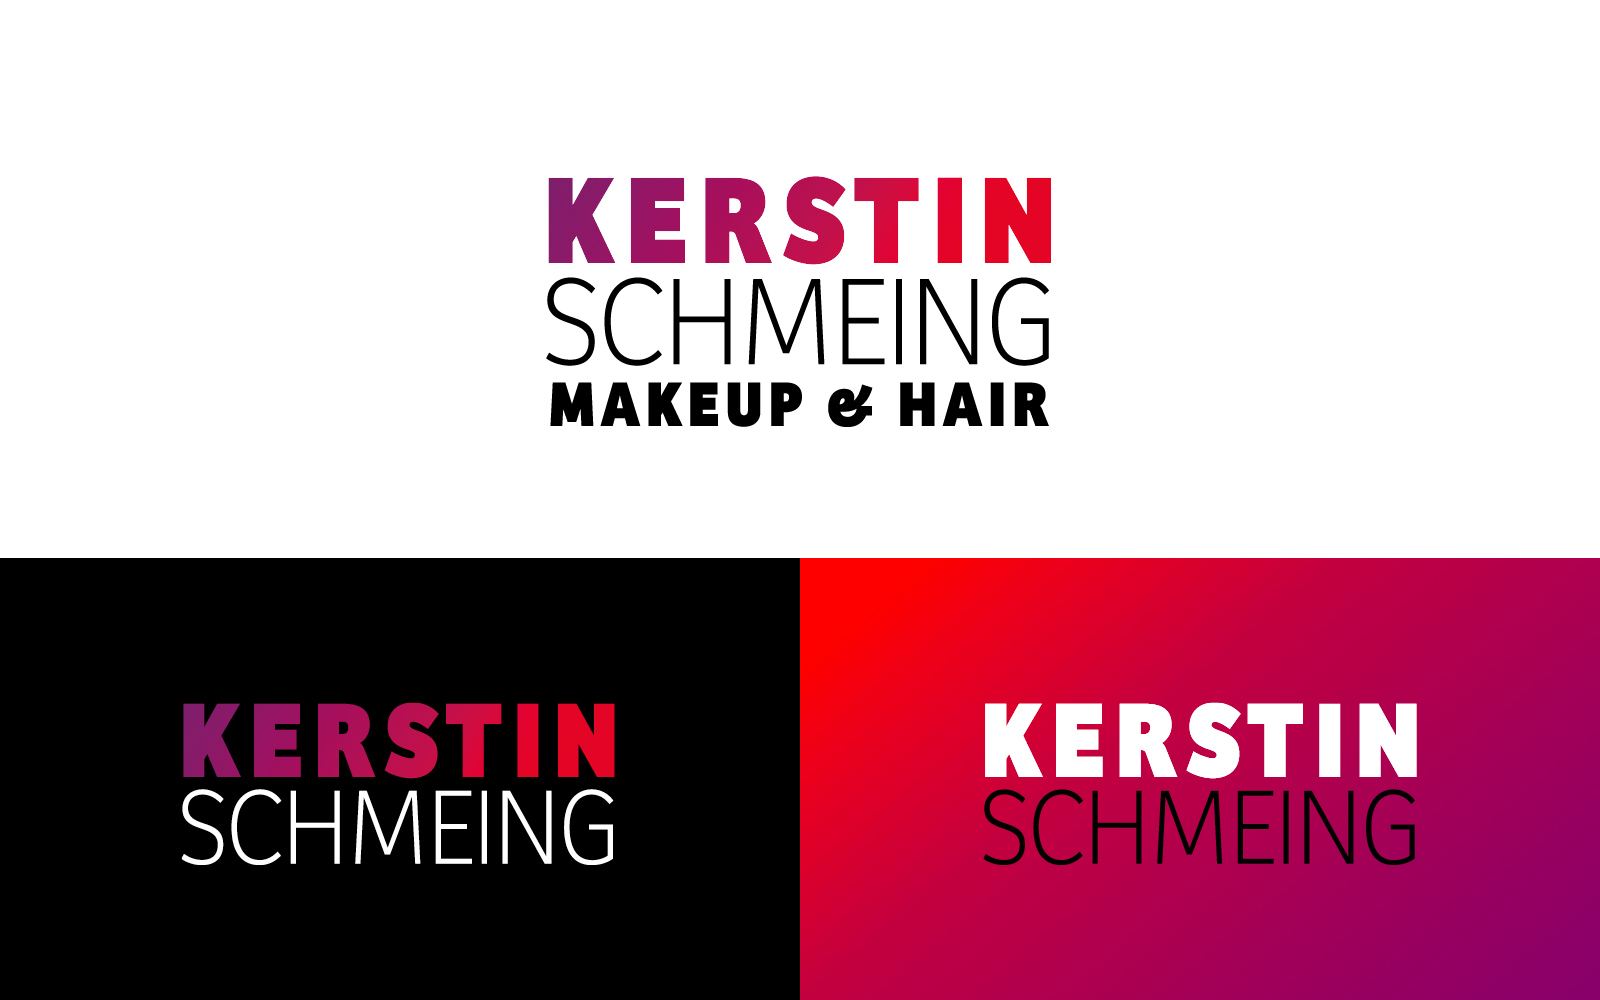 Kerstin Schmeing Make-Up und Hair - Logodesign